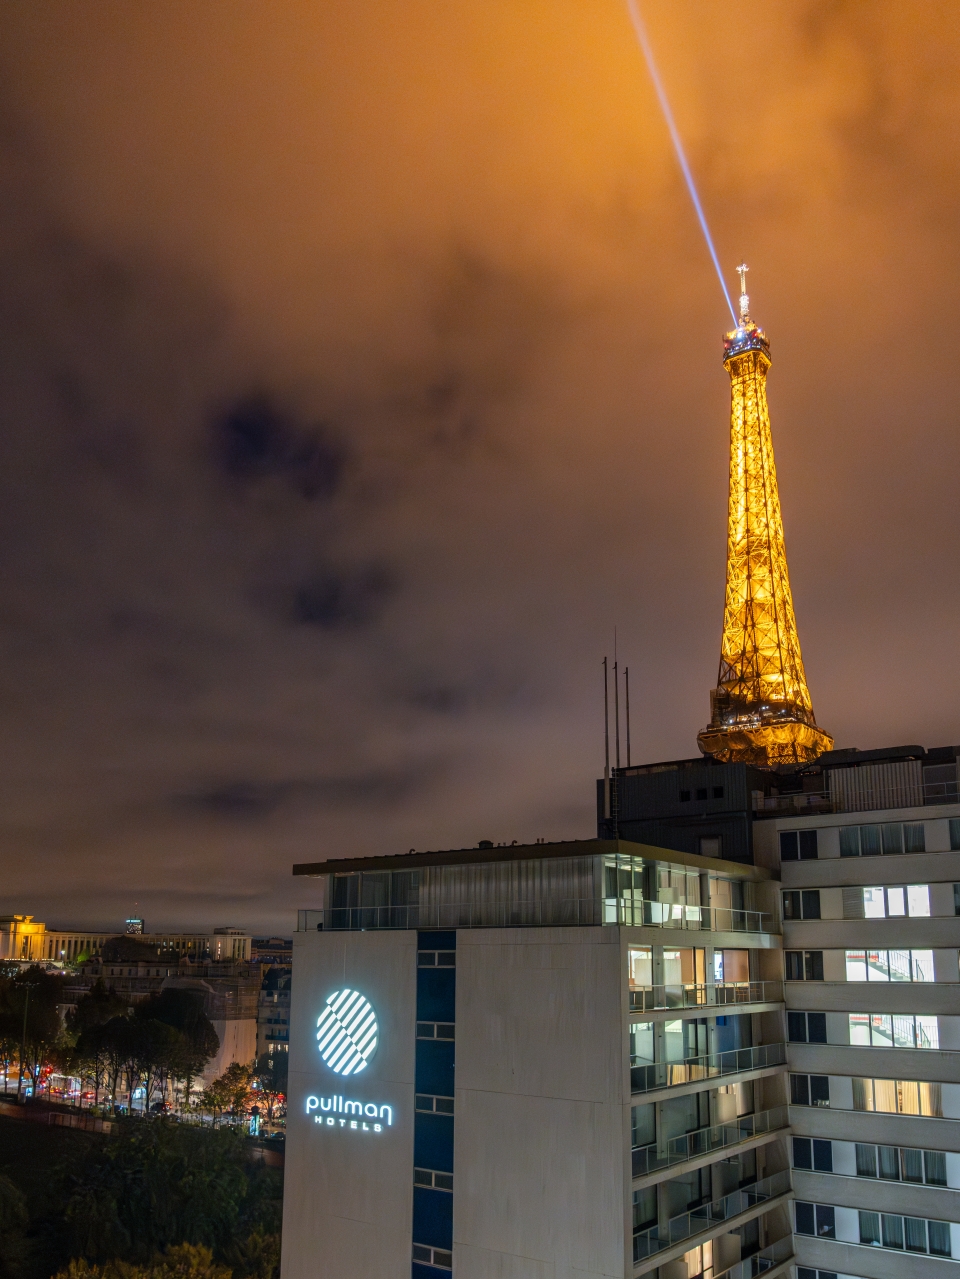 프랑스 파리 호텔 추천 3곳 : 15구 에펠탑뷰 파리 숙소